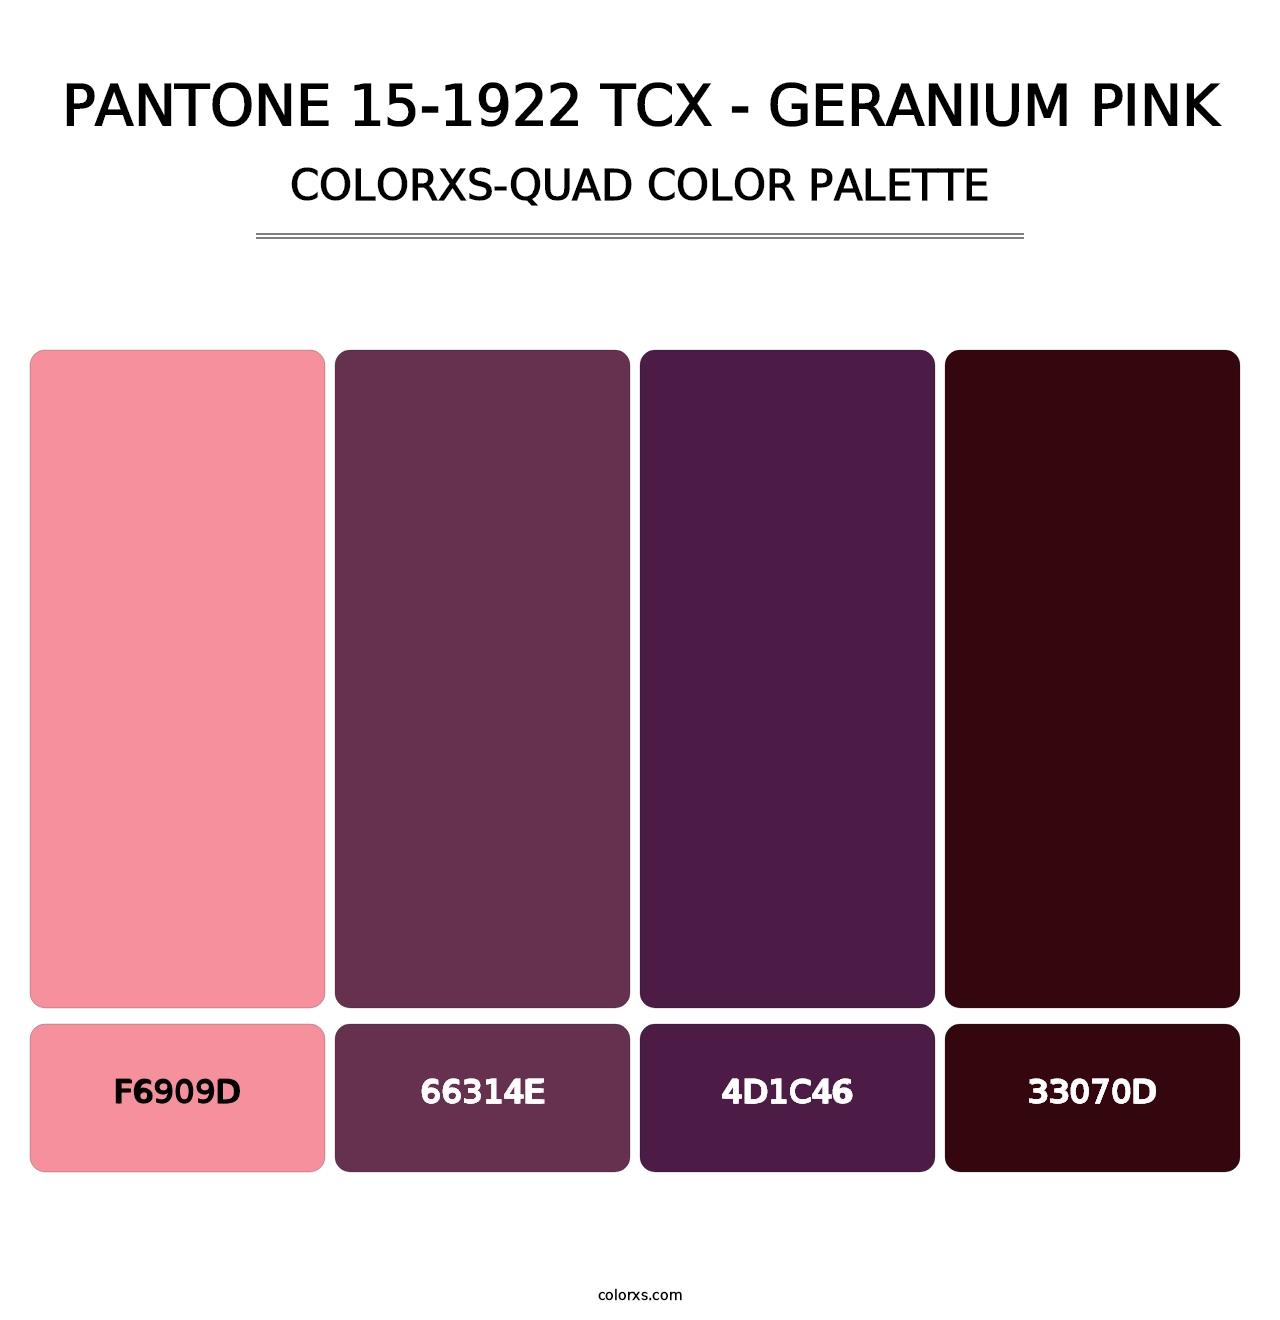 PANTONE 15-1922 TCX - Geranium Pink - Colorxs Quad Palette